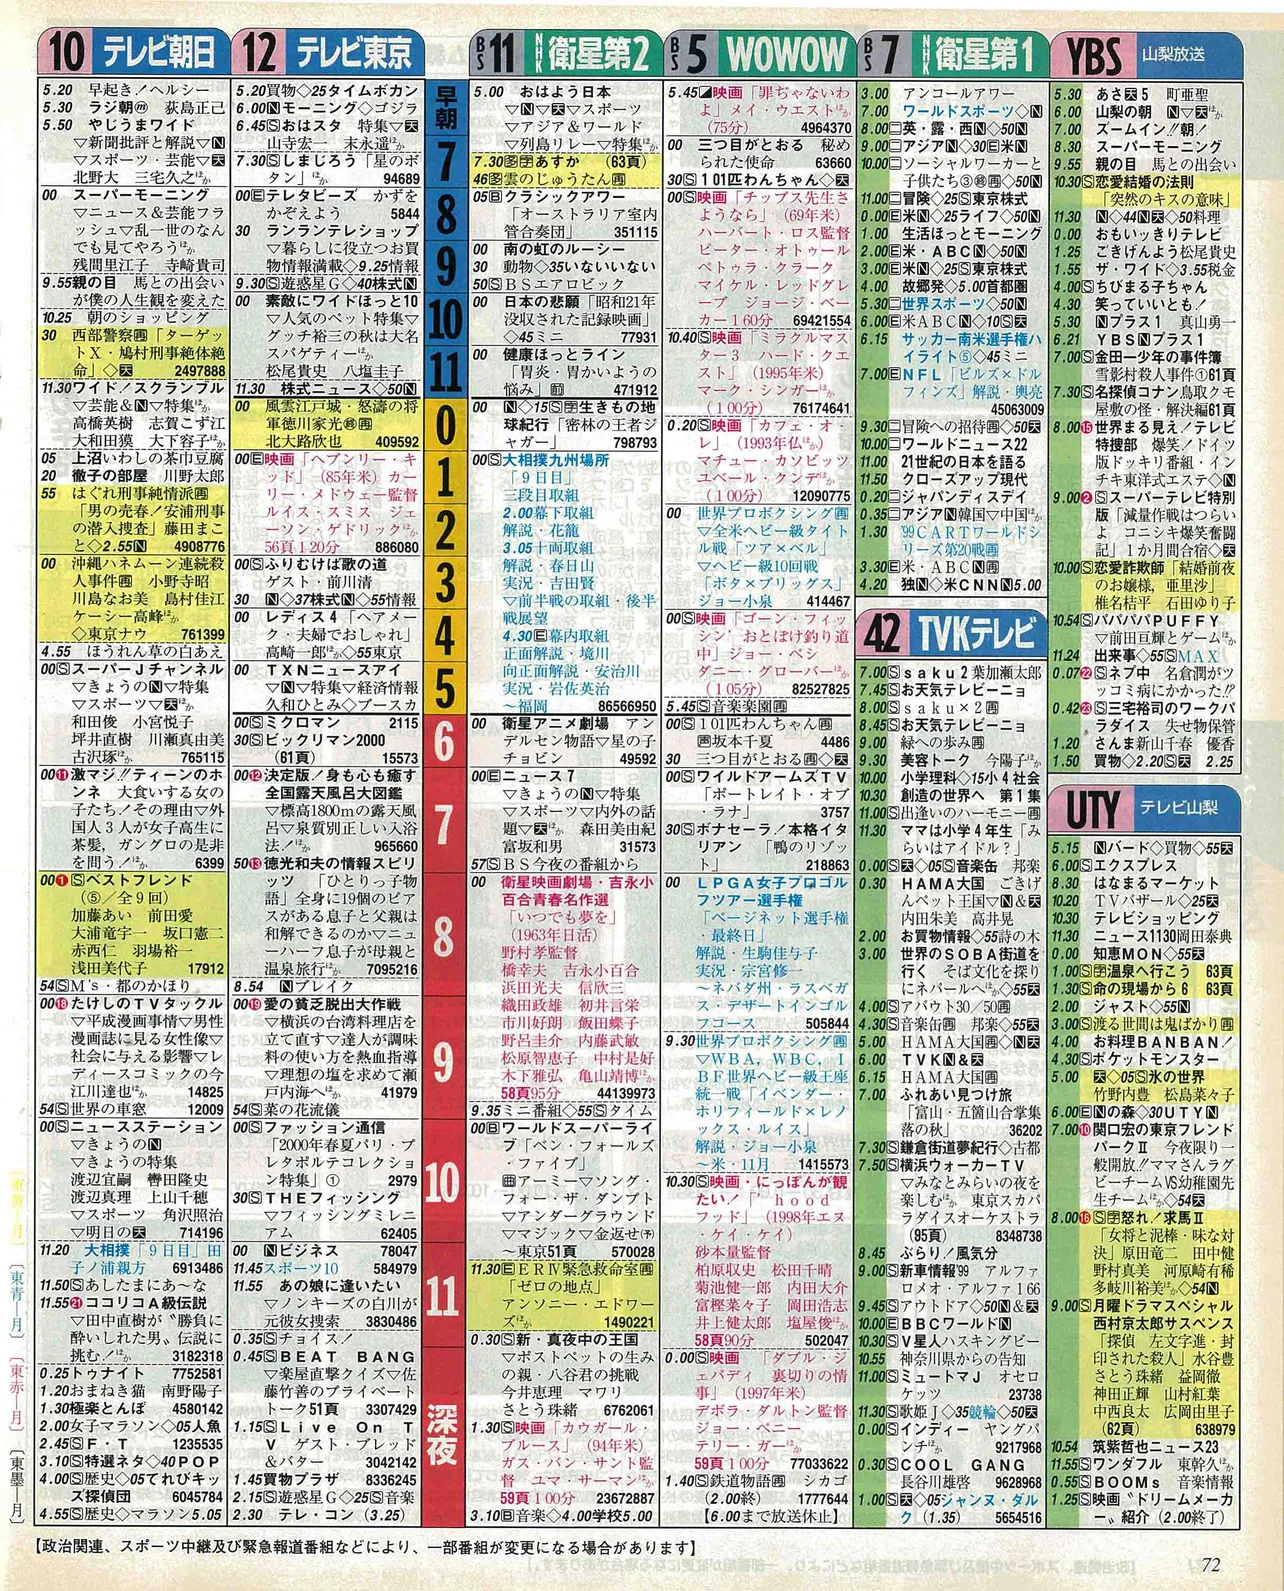 髙橋優斗のバースデー番組表（右）1999年11月15日